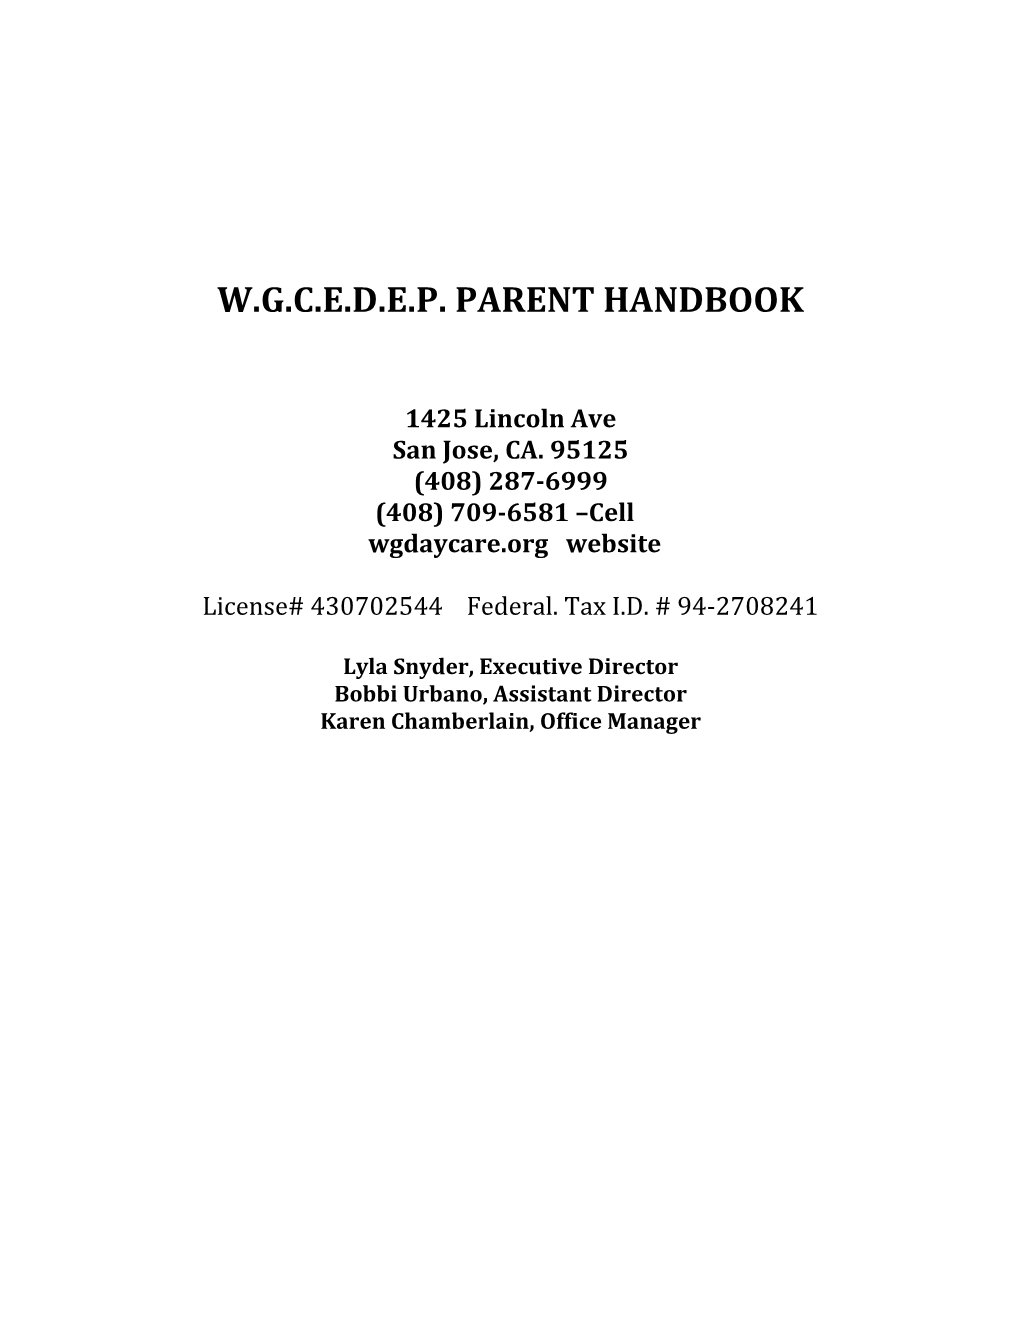 W.G.C.E.D.E.P. Parent Handbook